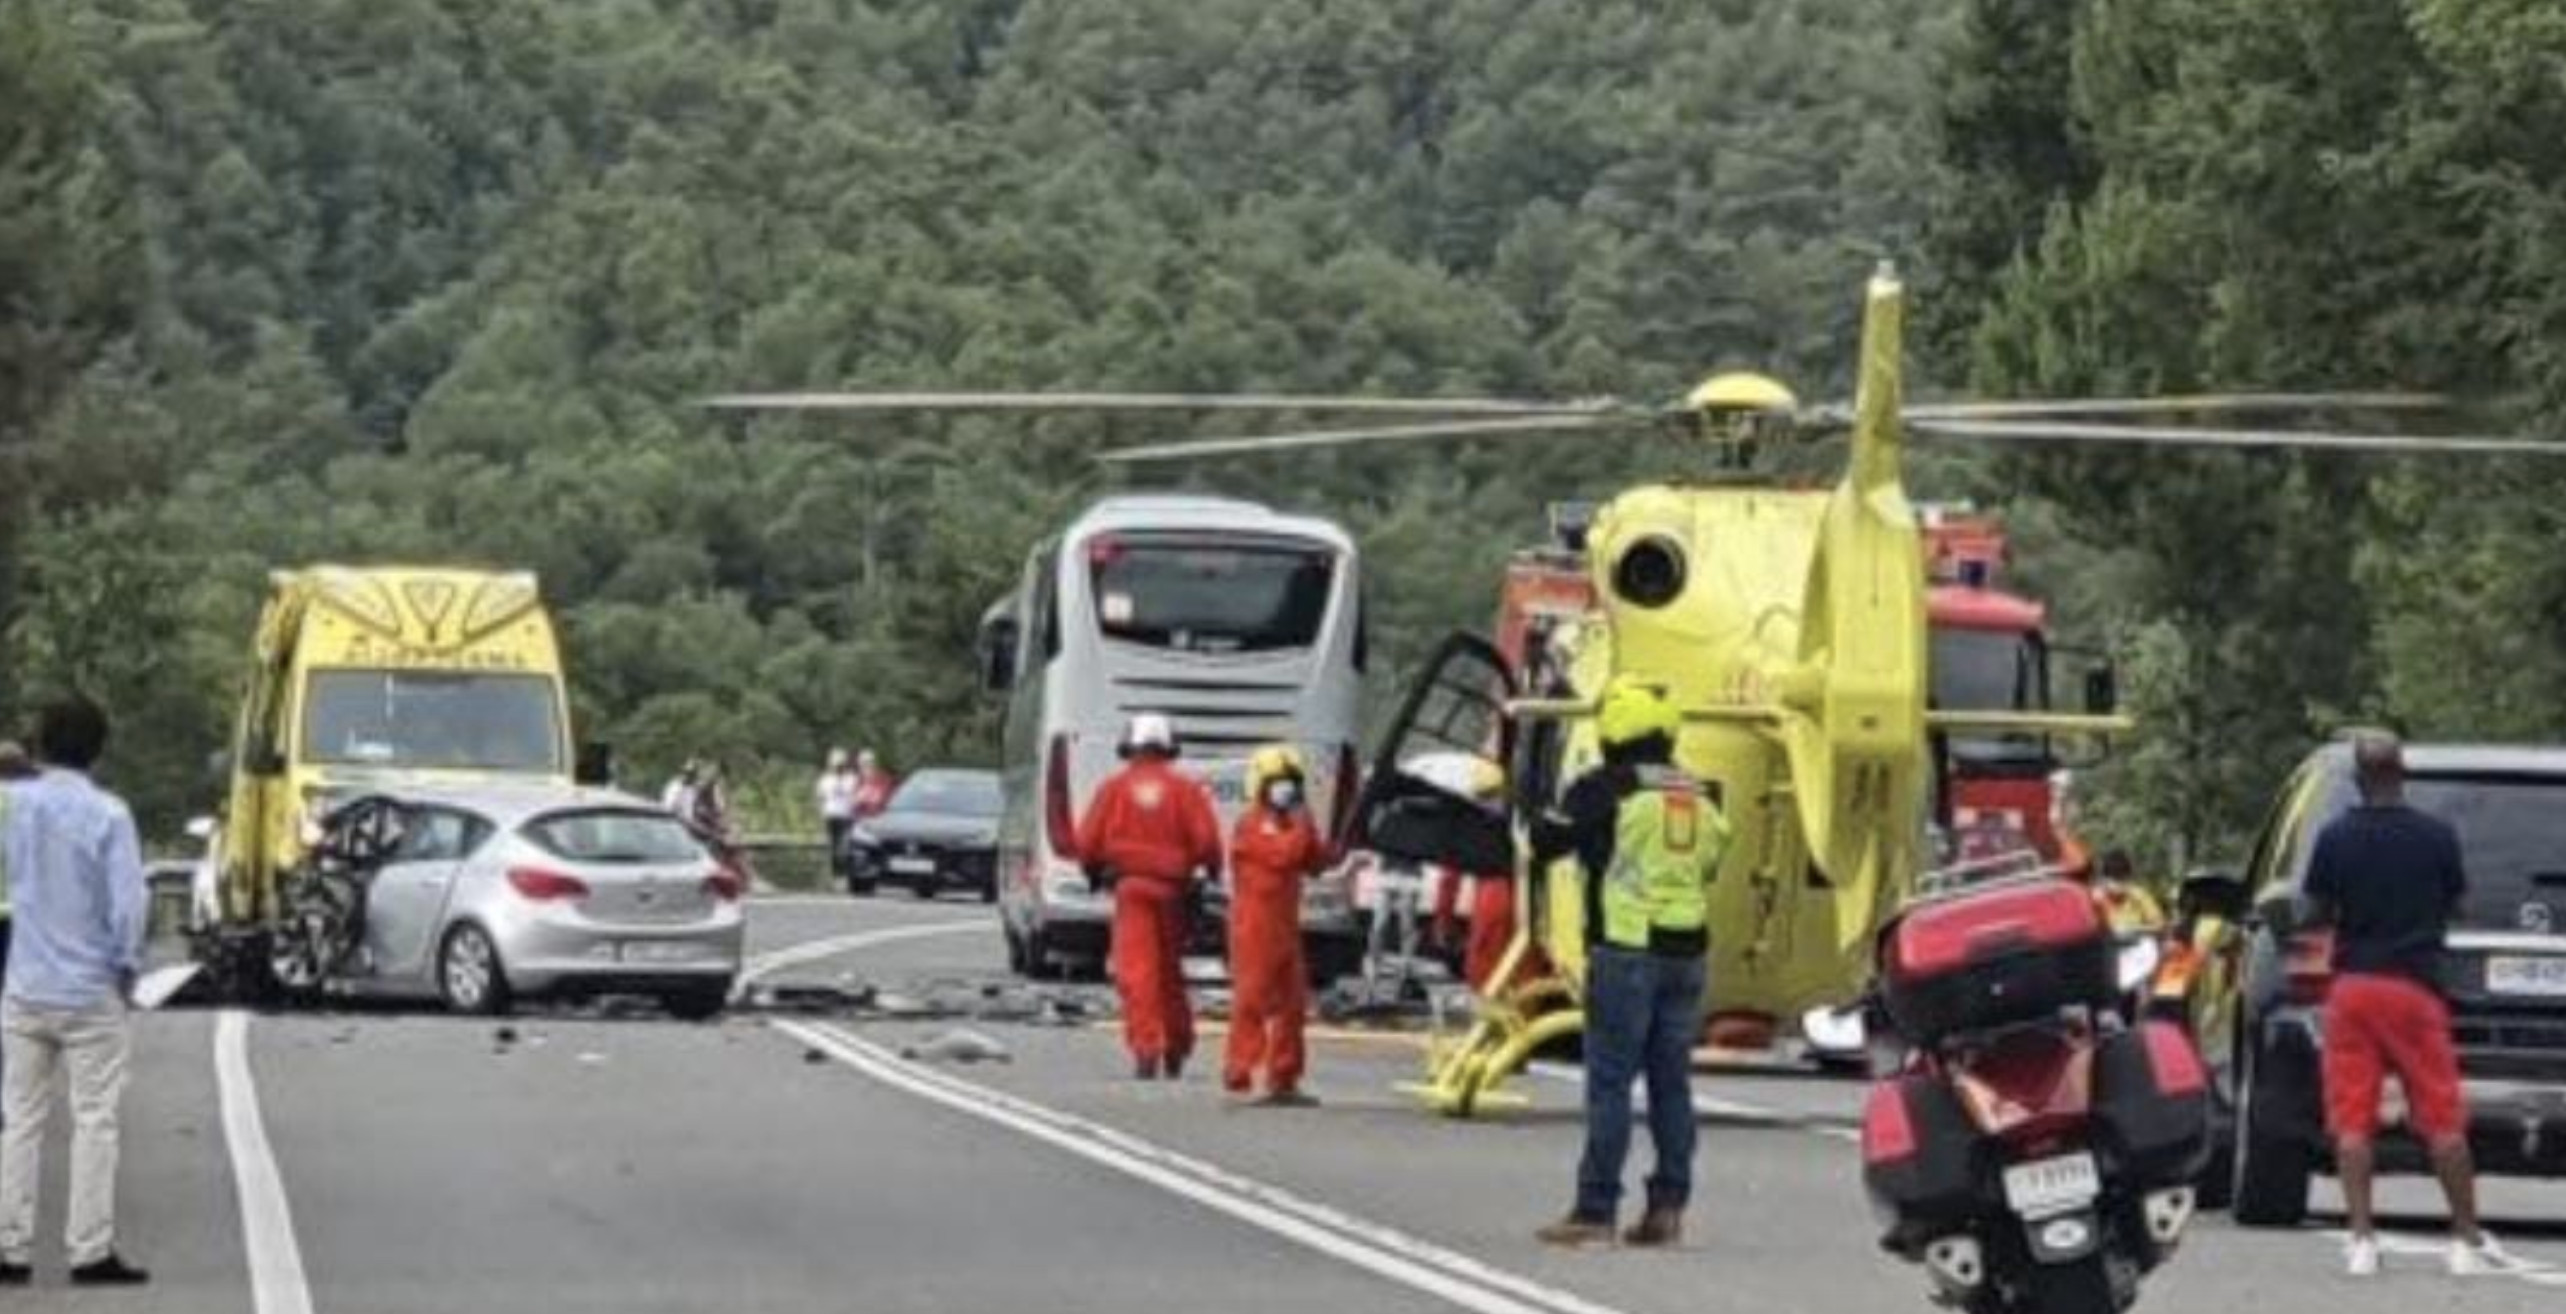 Servicios de emergencias tras el accidente mútiple en Bassella, Lleida / ANTIRADAR CATALUNYA